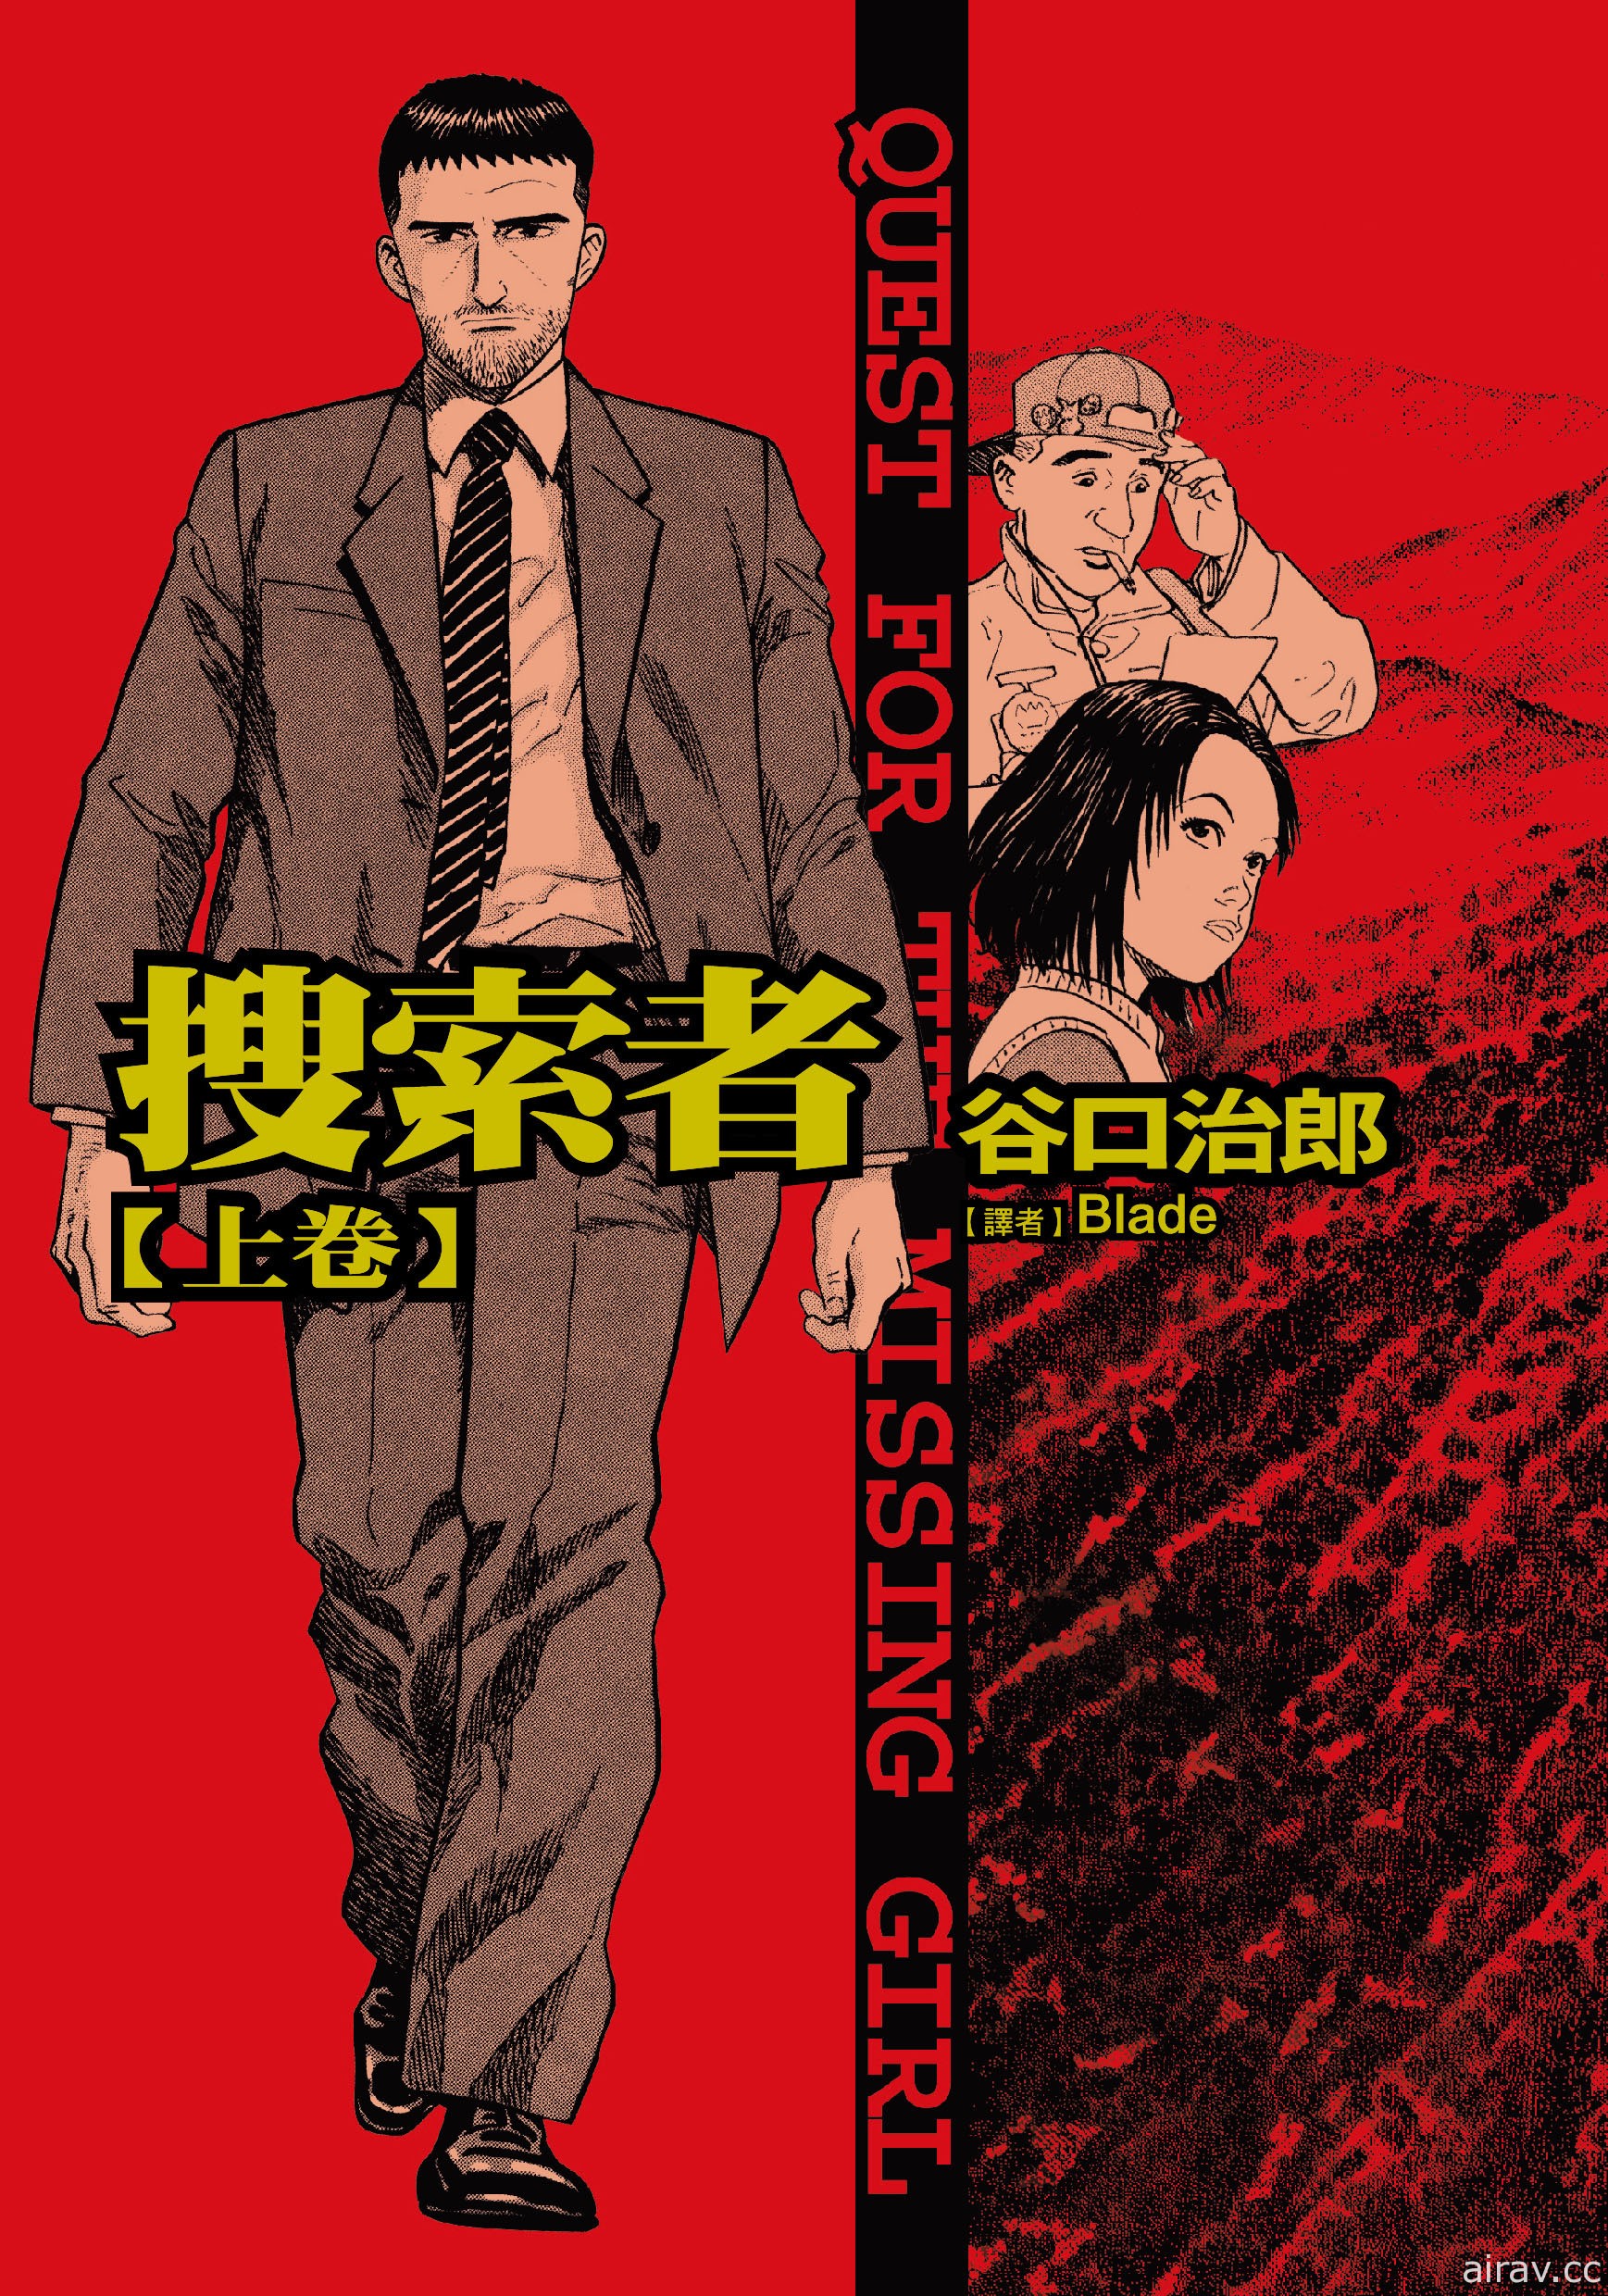 【书讯】台湾东贩 12 月漫画新书《死神少爷与黑女仆》等作